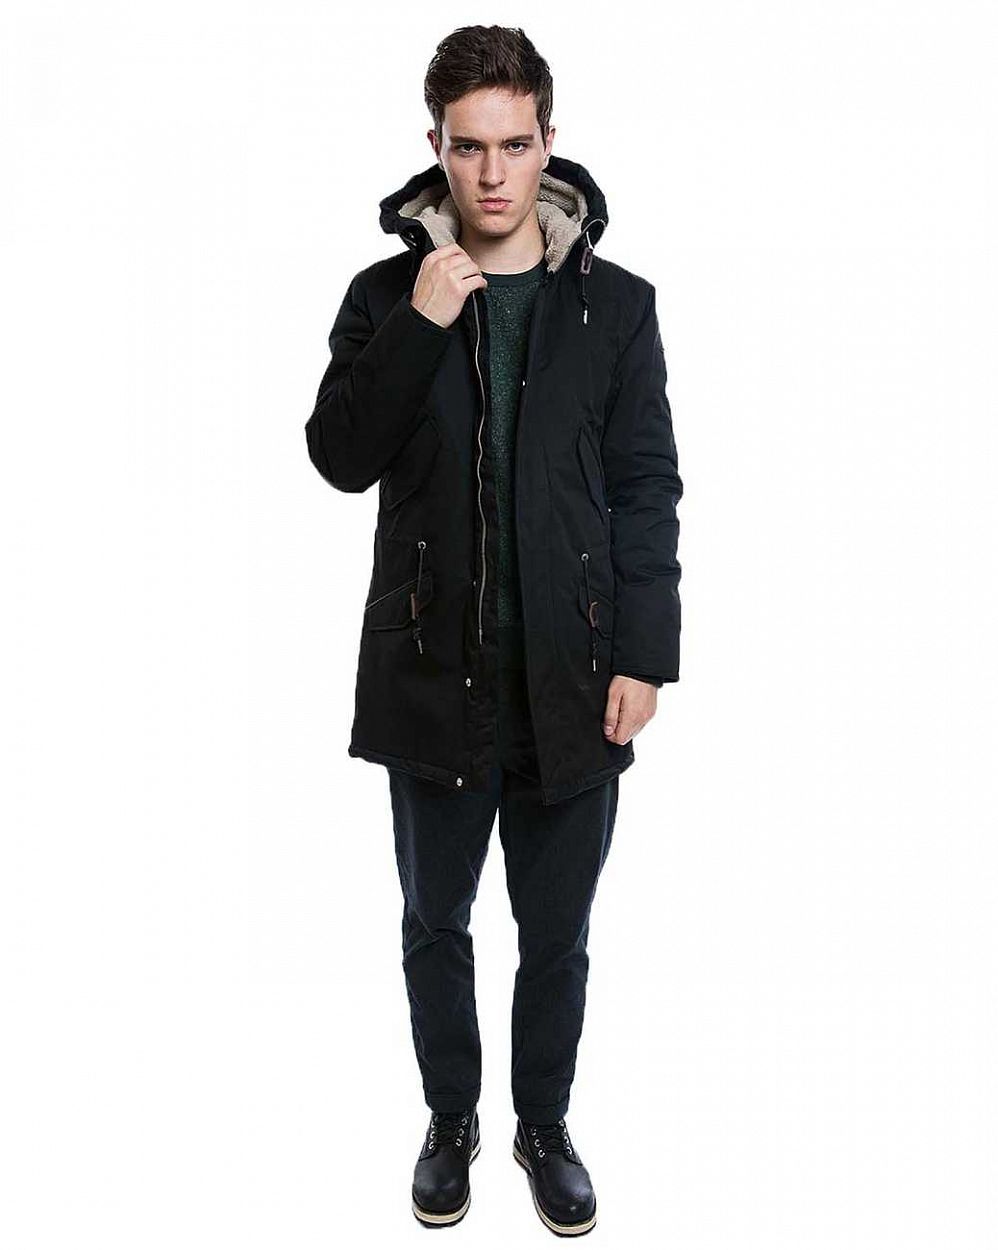 Парка куртка мужская зимняя Loading Jacket 1210-2 Black отзывы